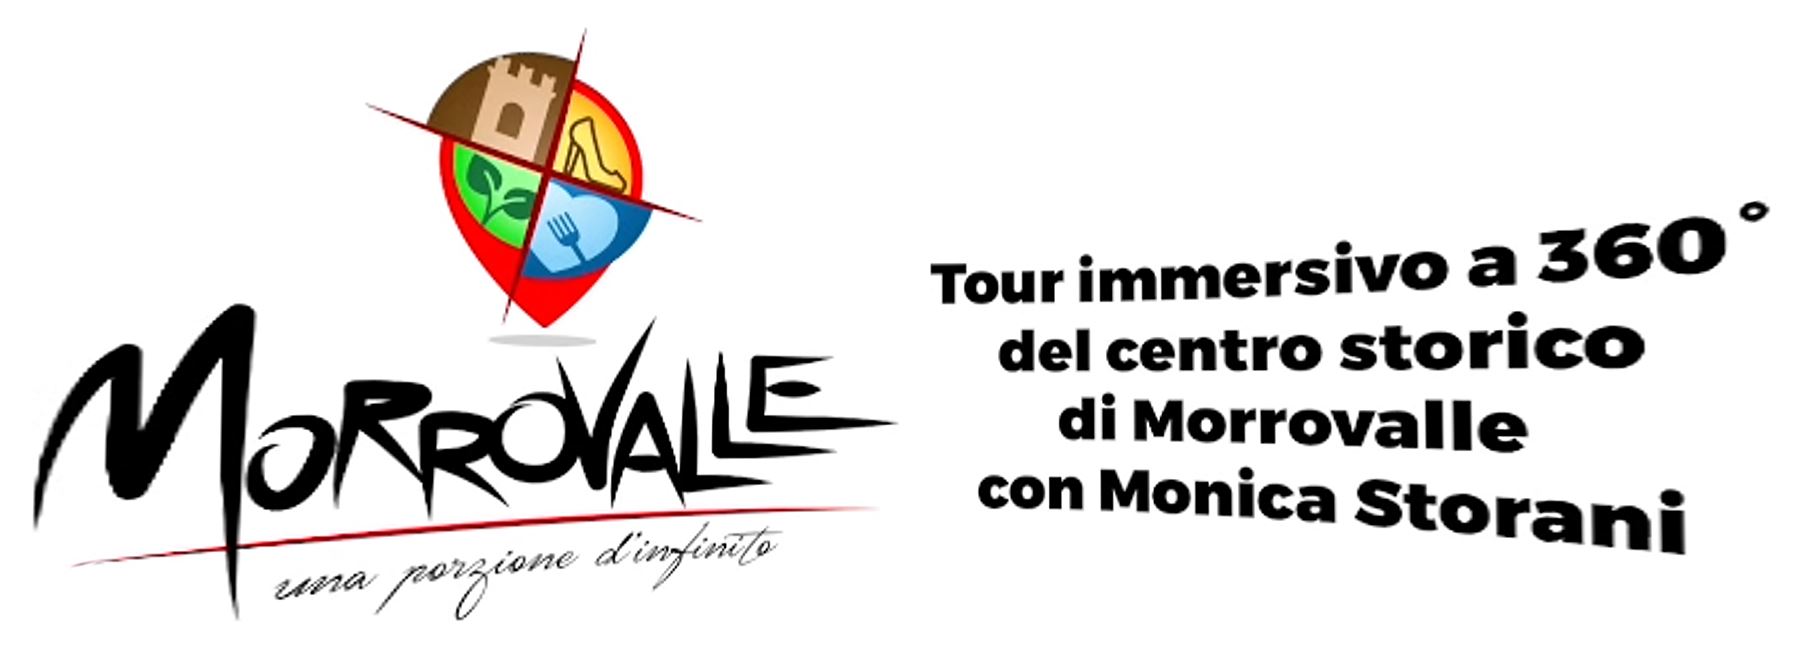 logo comune di morrovalle una porzione d'infinito - tour immersivo 360 del centro storico di morrovalle con monica storani